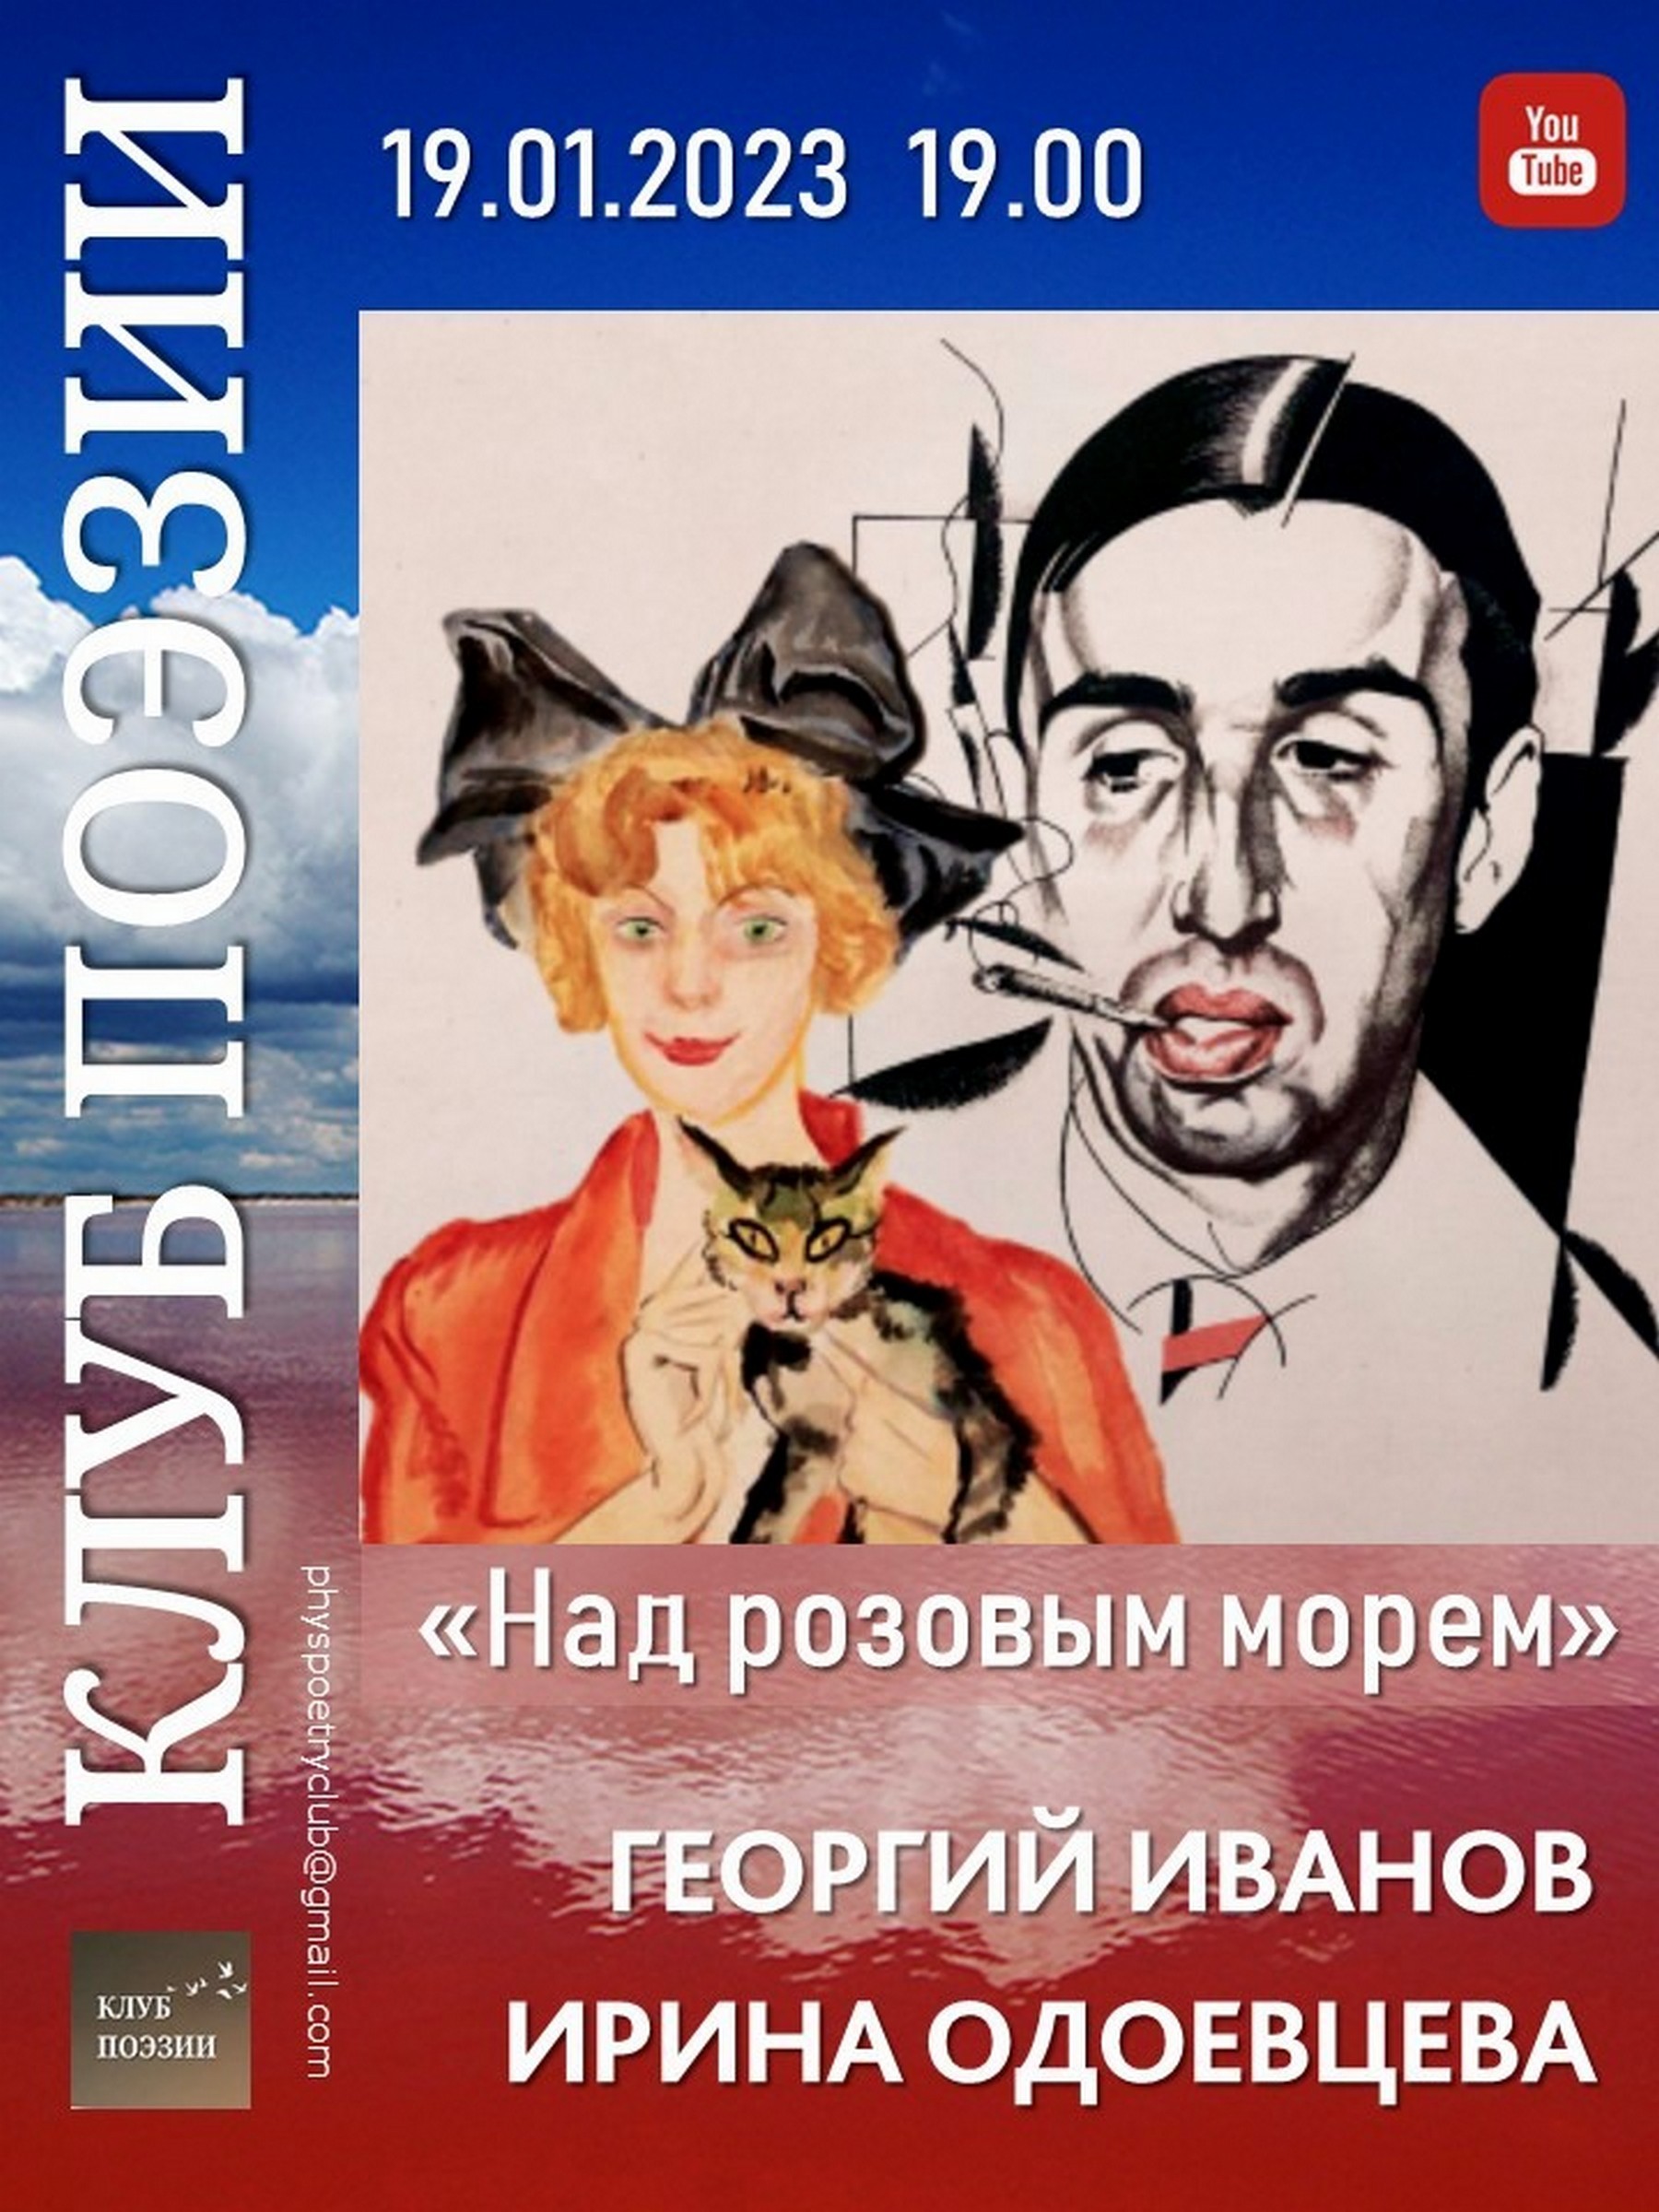 Иллюстрация: Клуб поэзии. «Над розовым морем…» Георгий Иванов и Ирина Одоевцева